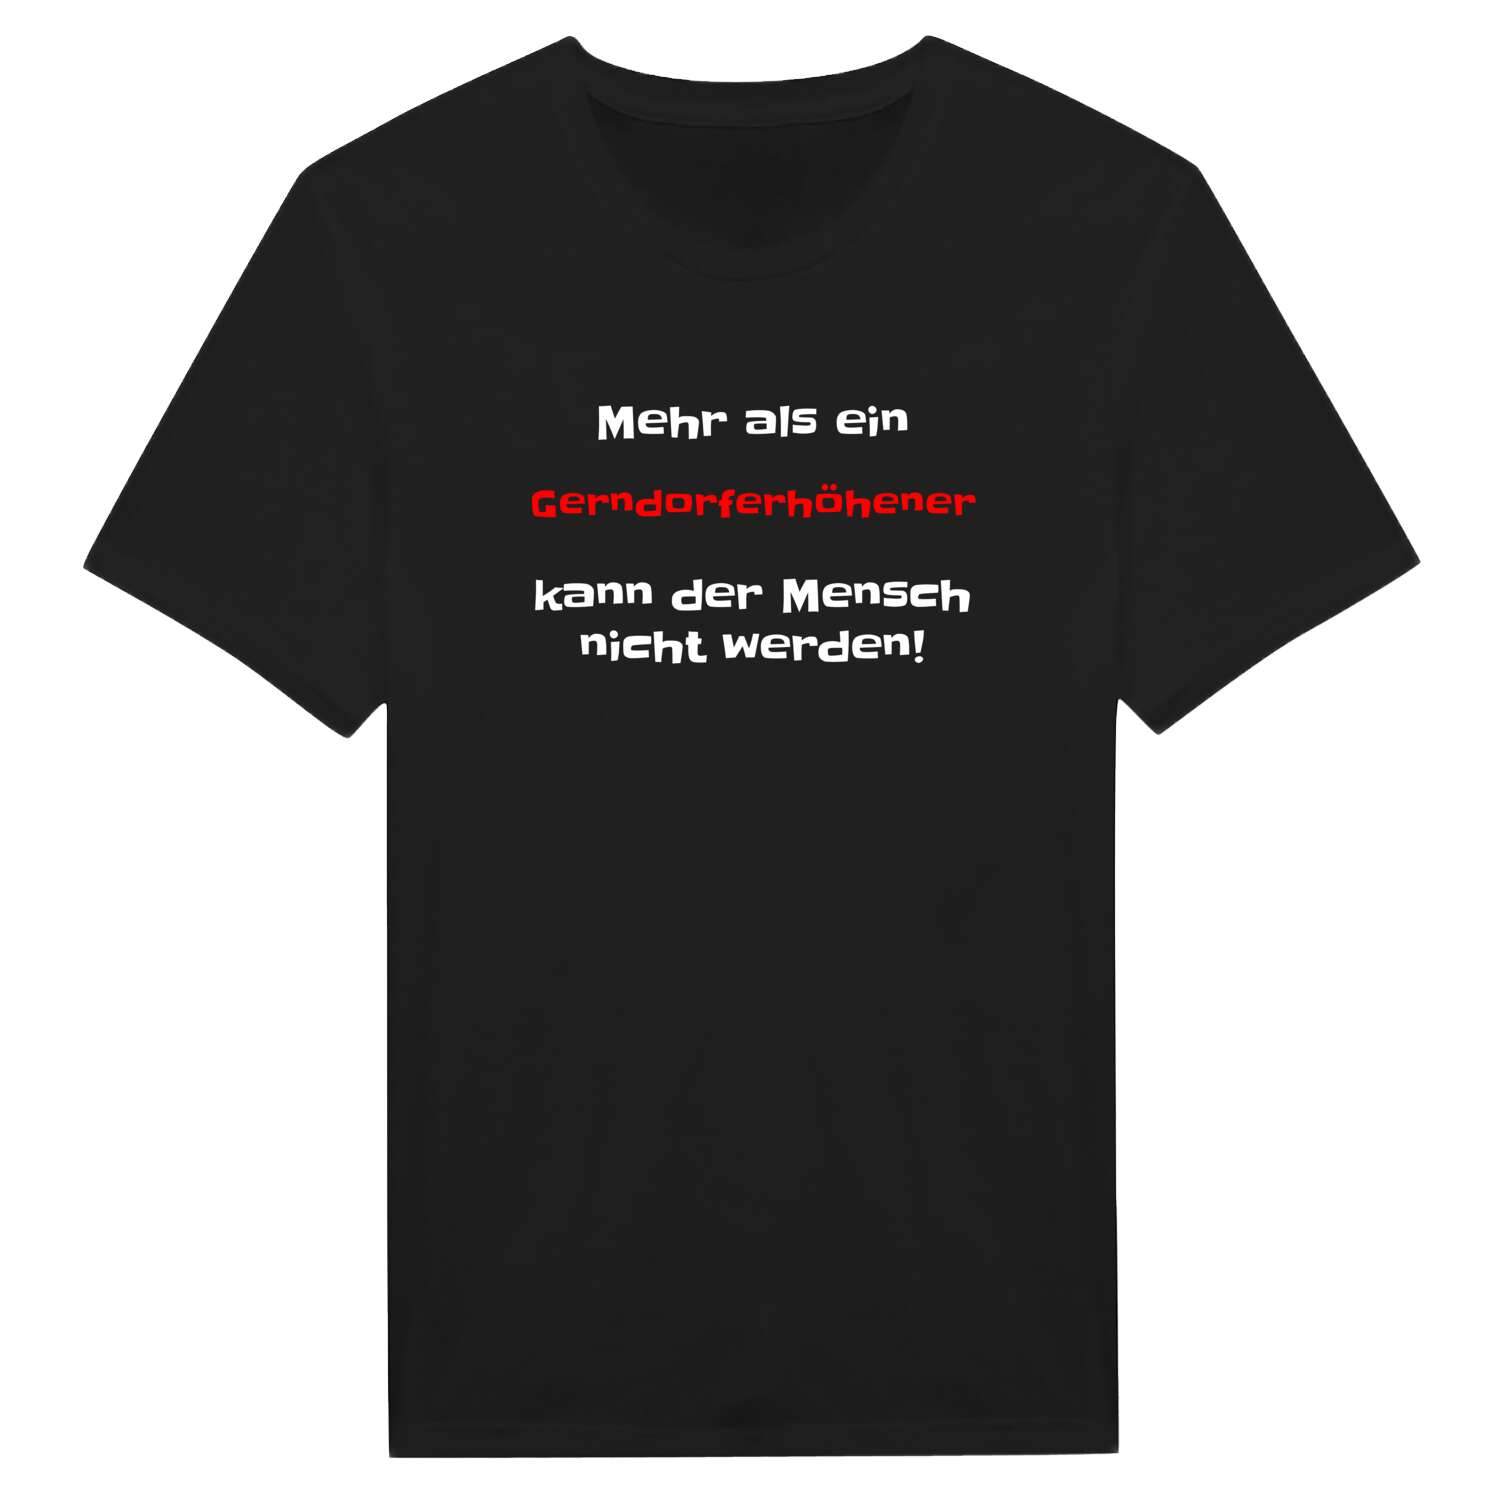 Gerndorferhöhe T-Shirt »Mehr als ein«